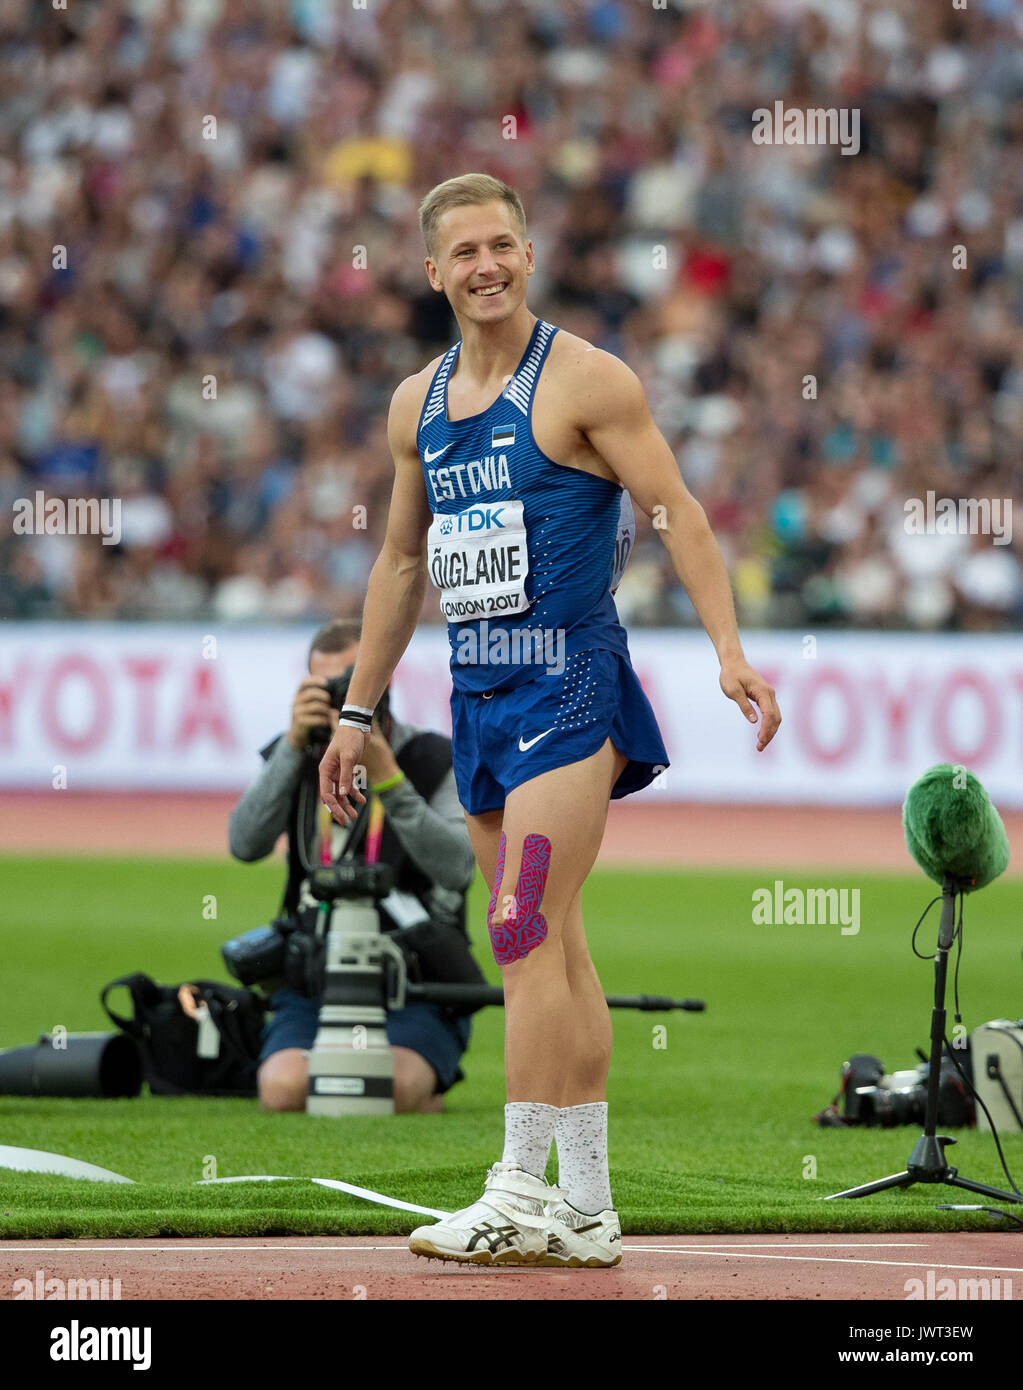 Janek OIGLANE d'Estonie célèbre un lancer au Javelot Décathlon pendant les championnats du monde d'athlétisme 2017 le jour 9 aux Jeux Olympiques Banque D'Images